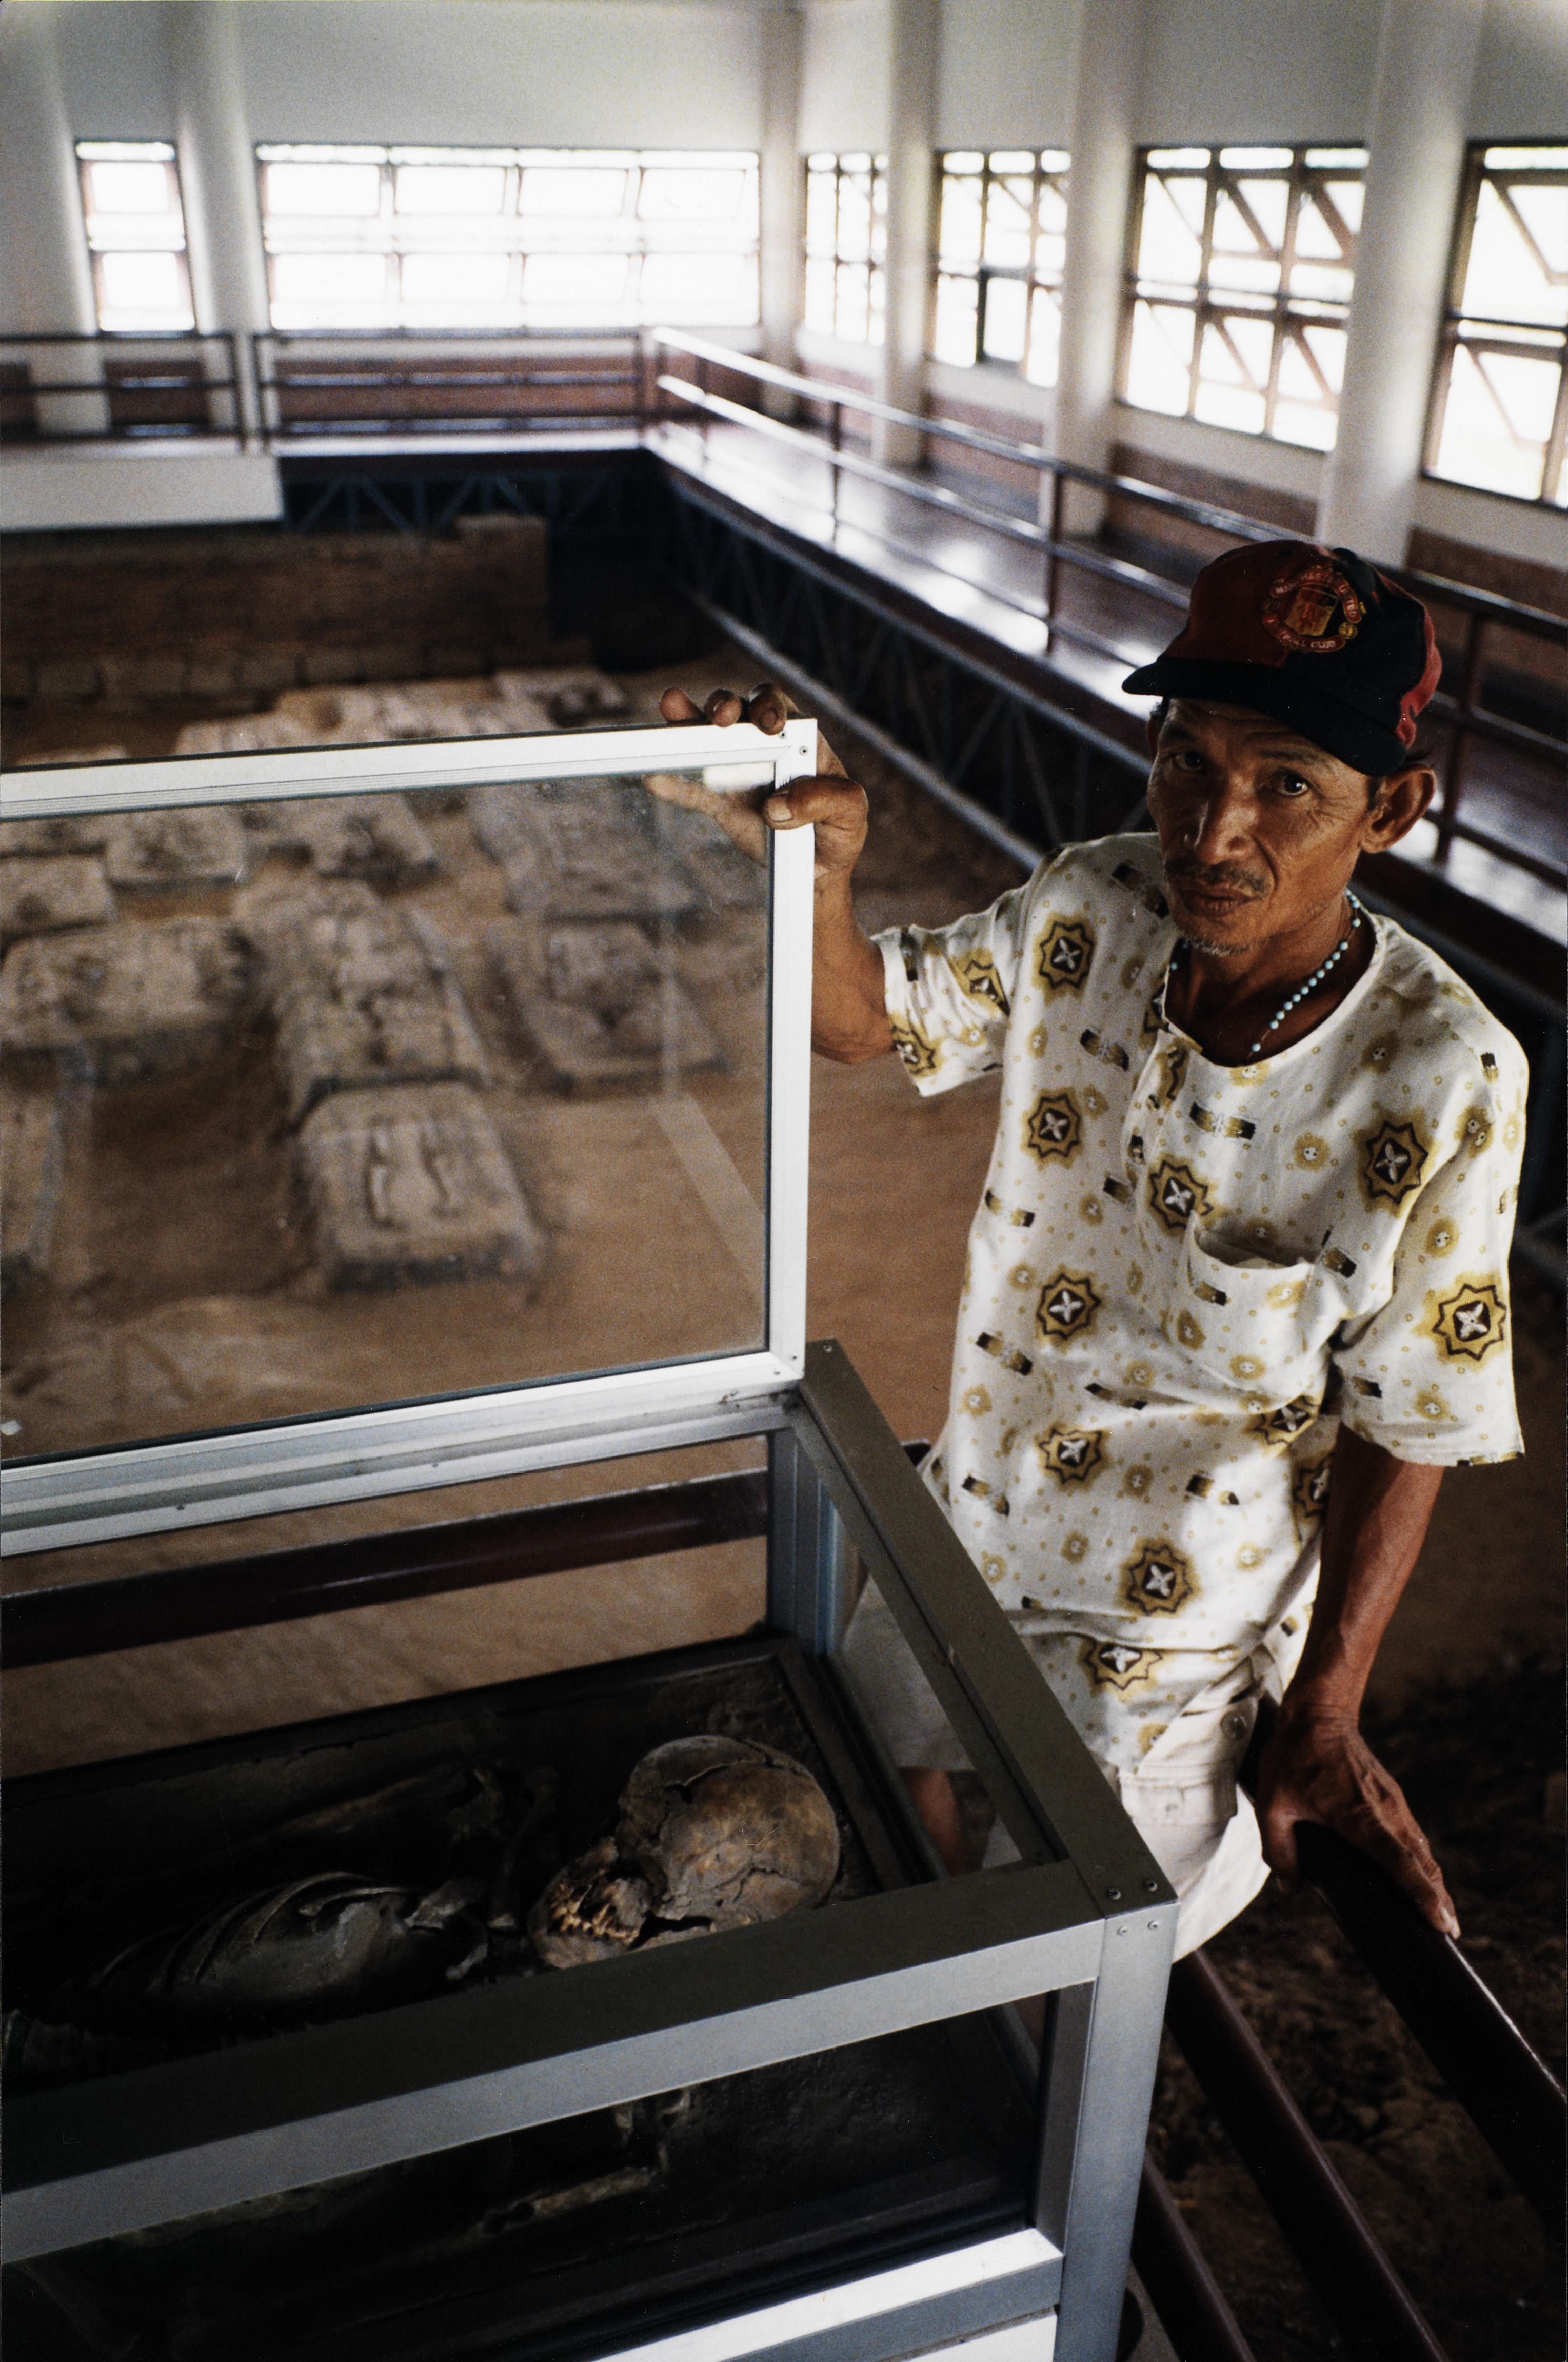 Preservação dos enterramentos dos portugueses, residentes na antiga capital do Reino do Sião Aytthaya (Tailândia)